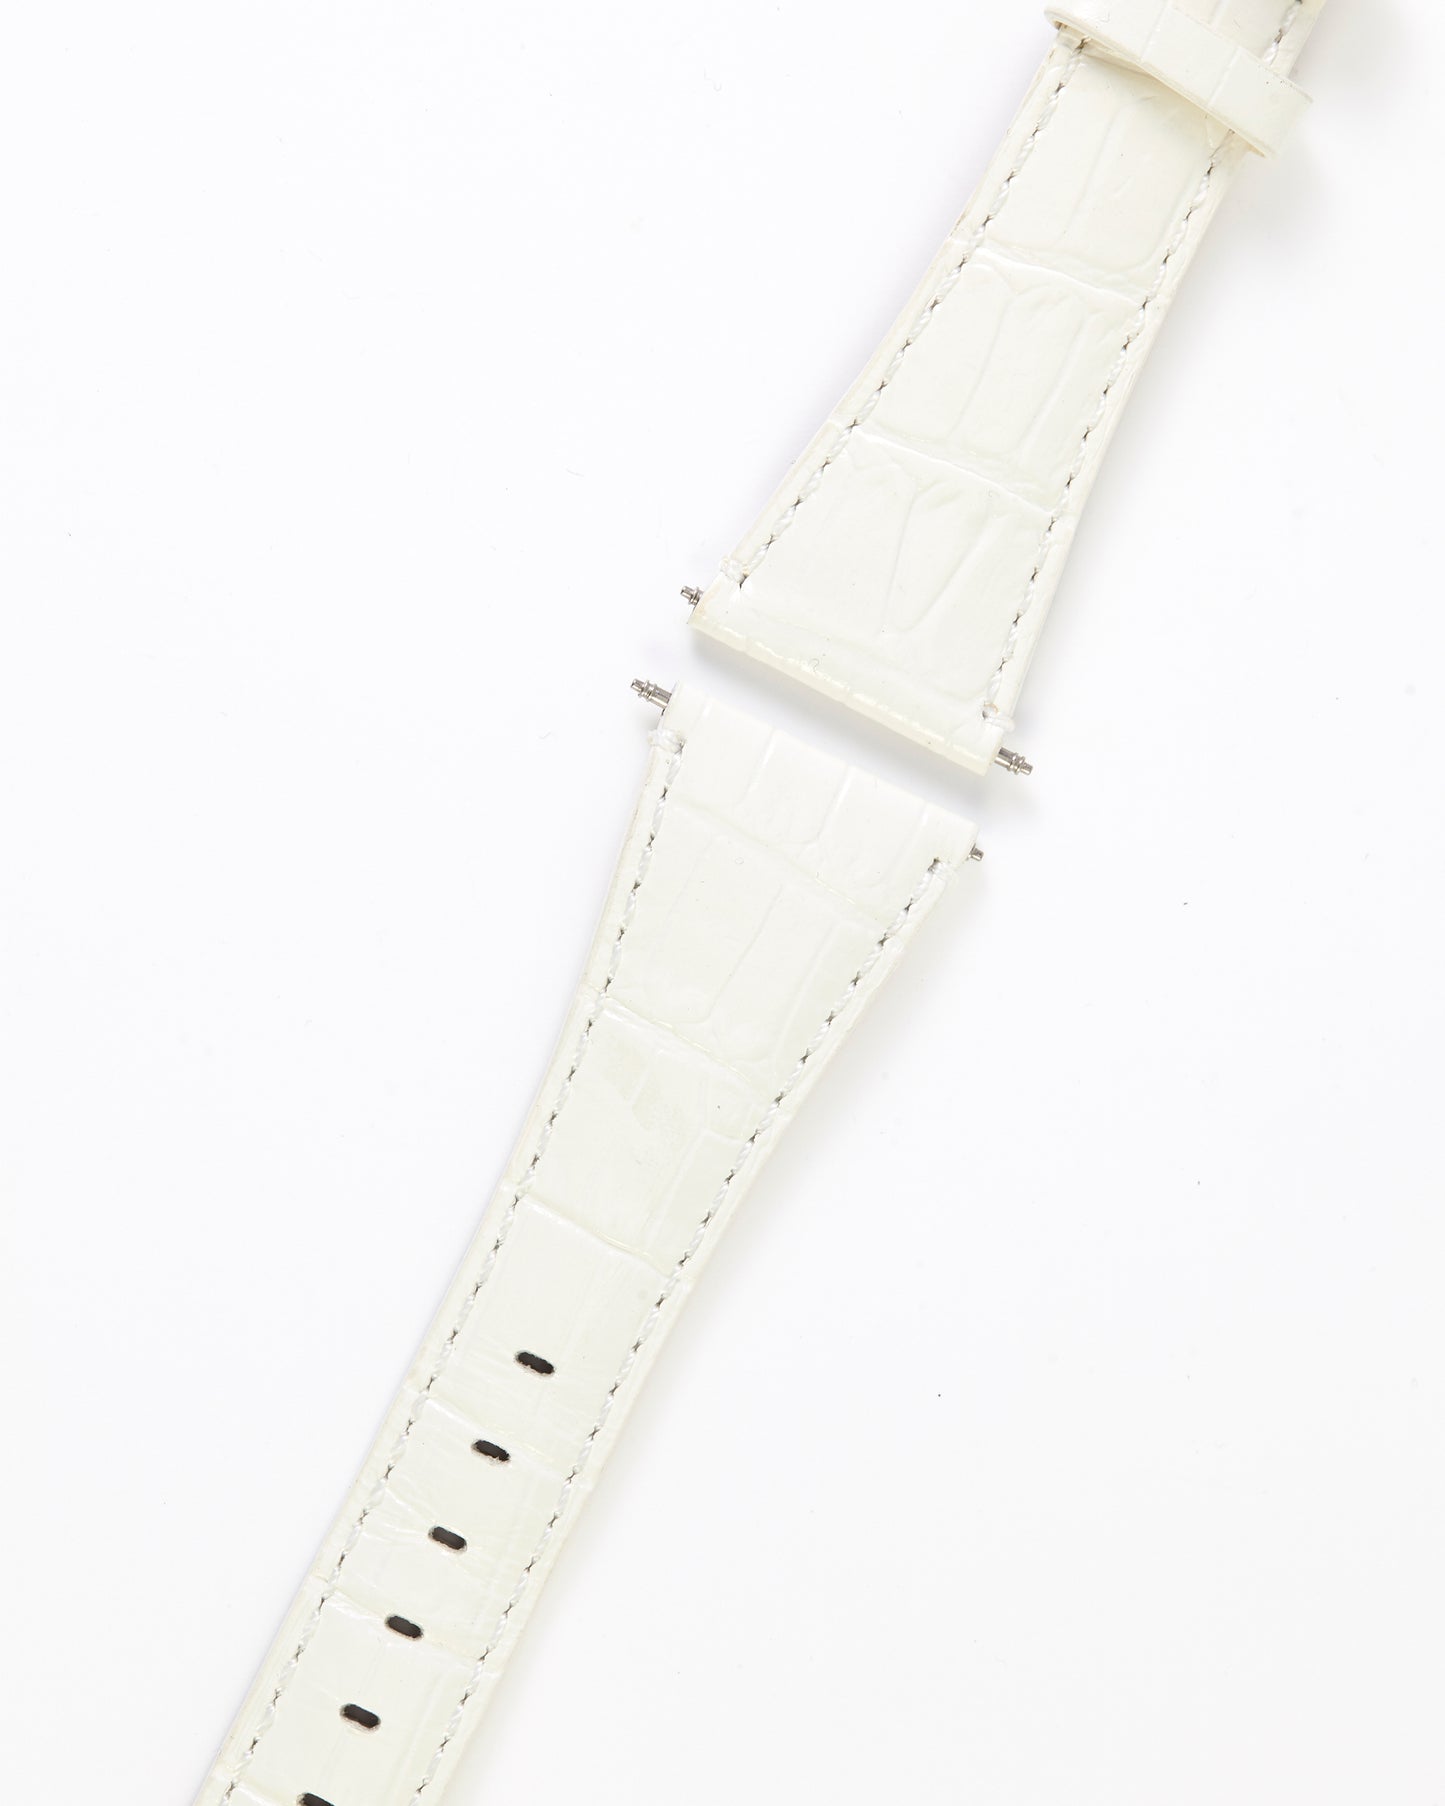 Ecclissi 23905 White Alligator Grain Leather Strap 24mm x 16mm